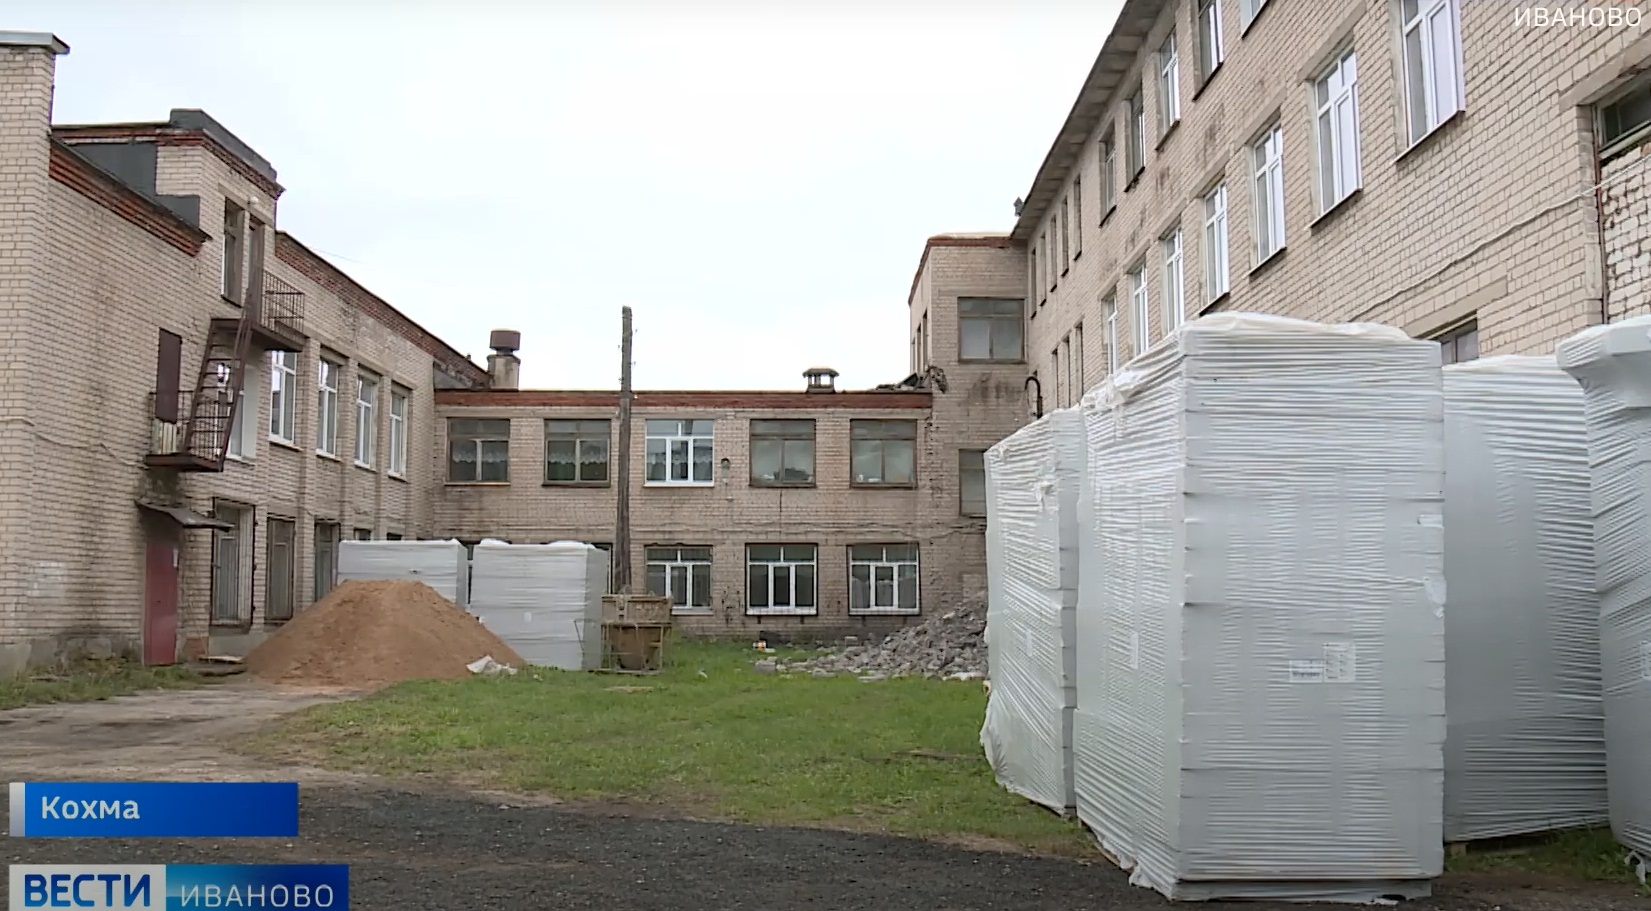 В 4 школах Ивановской области продолжается ремонт по федеральной программе